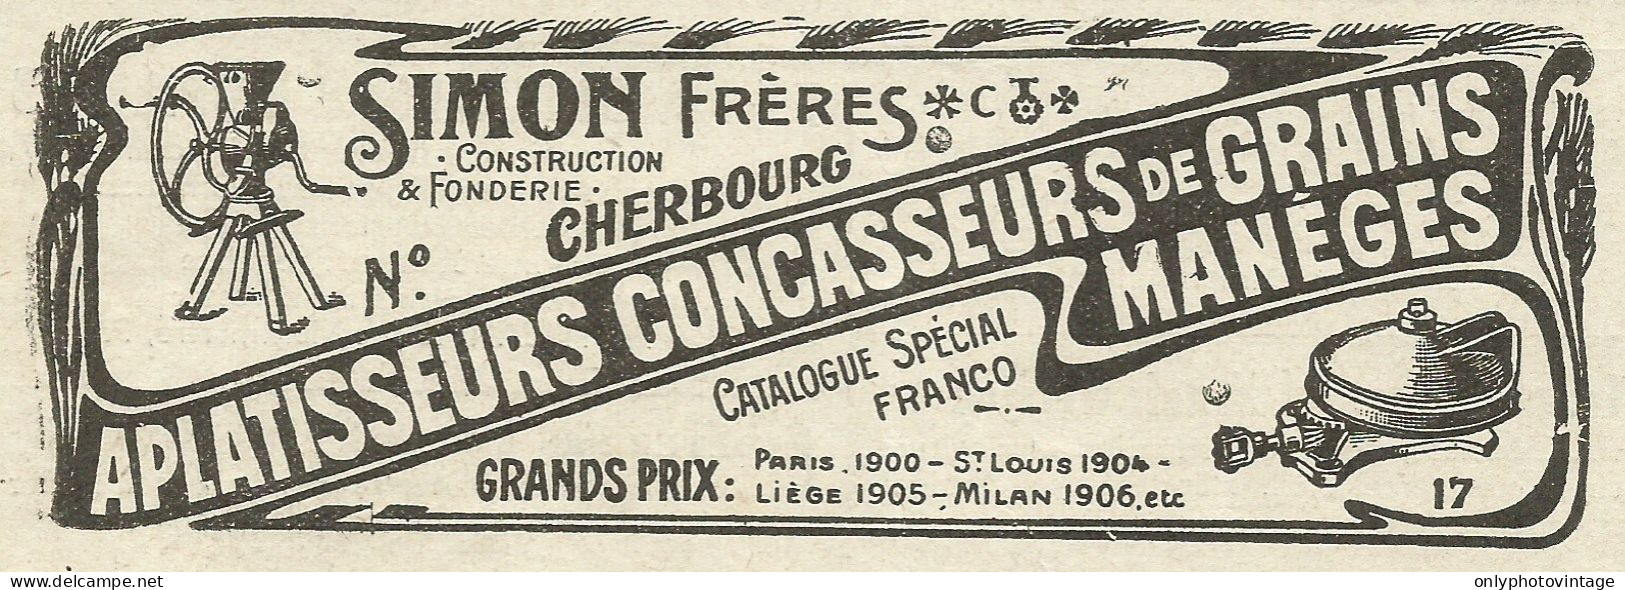 Simon Frères - Construction & Fonderie - Pubblicità 1934 - Advertising - Publicités